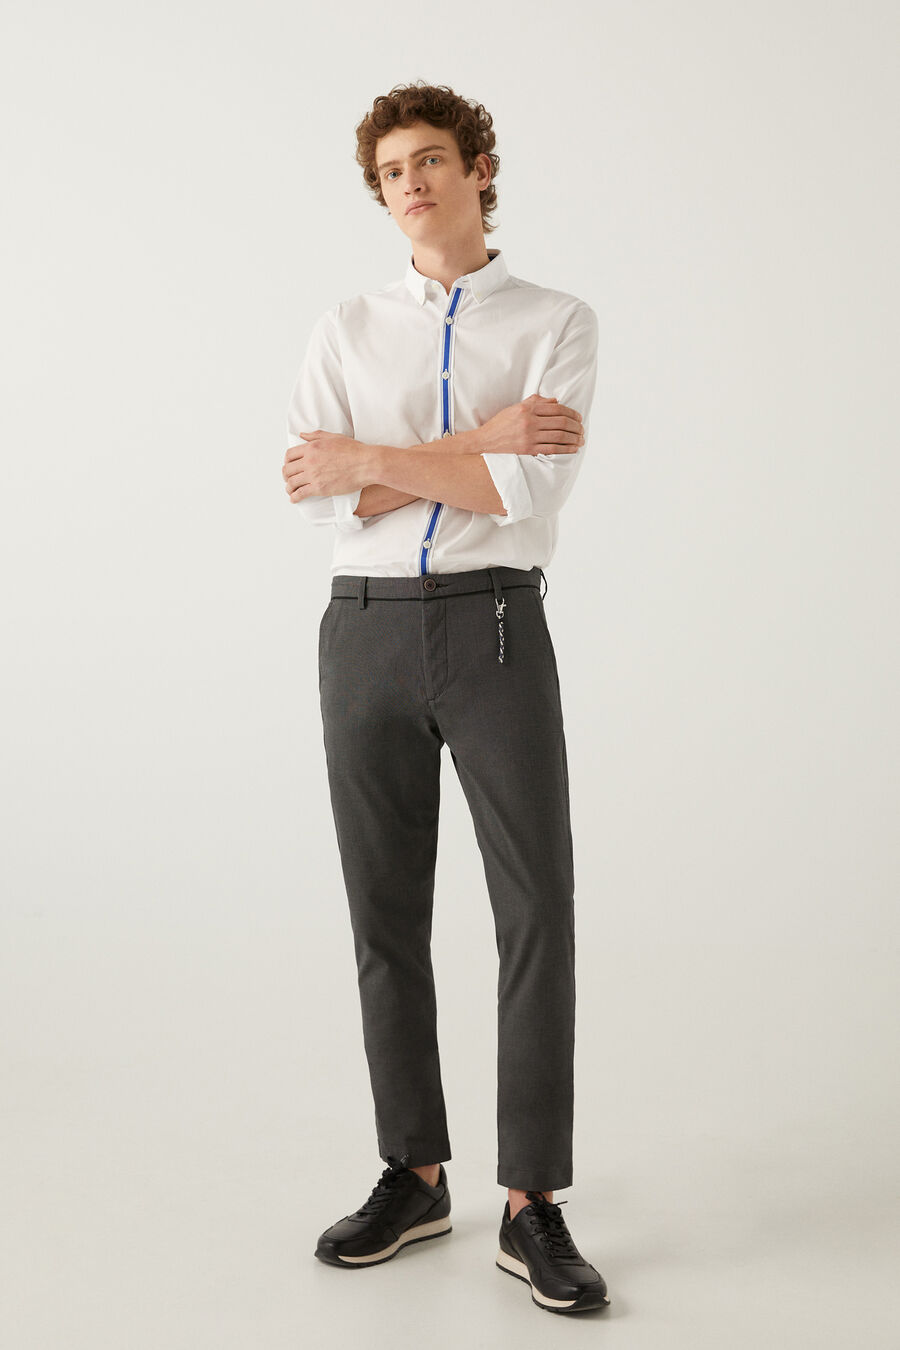 Pantalon chino habillé structuré bicolore